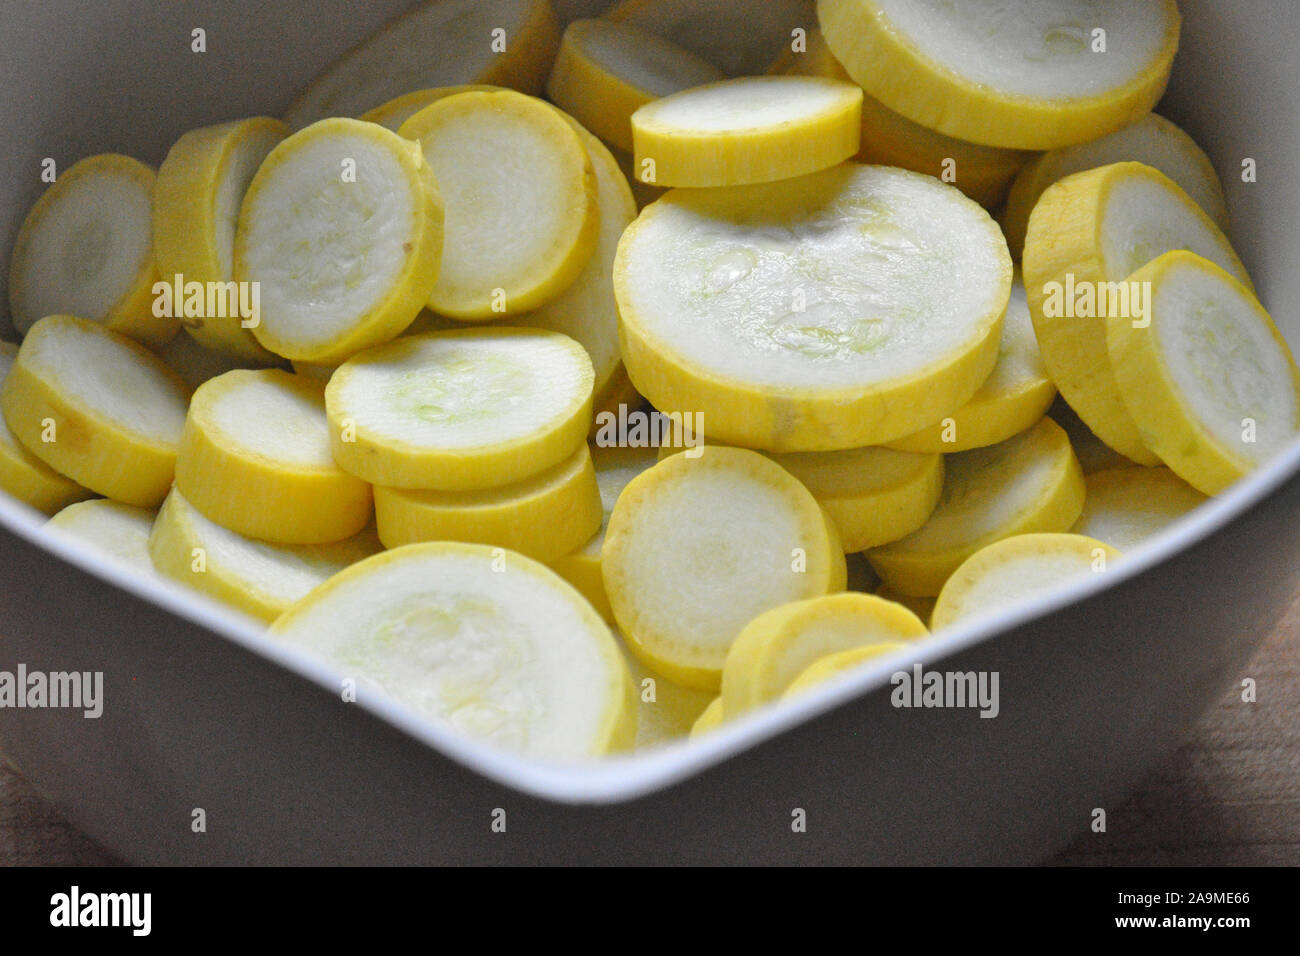 Tranches de courgette jaune dans un bol blanc Banque D'Images